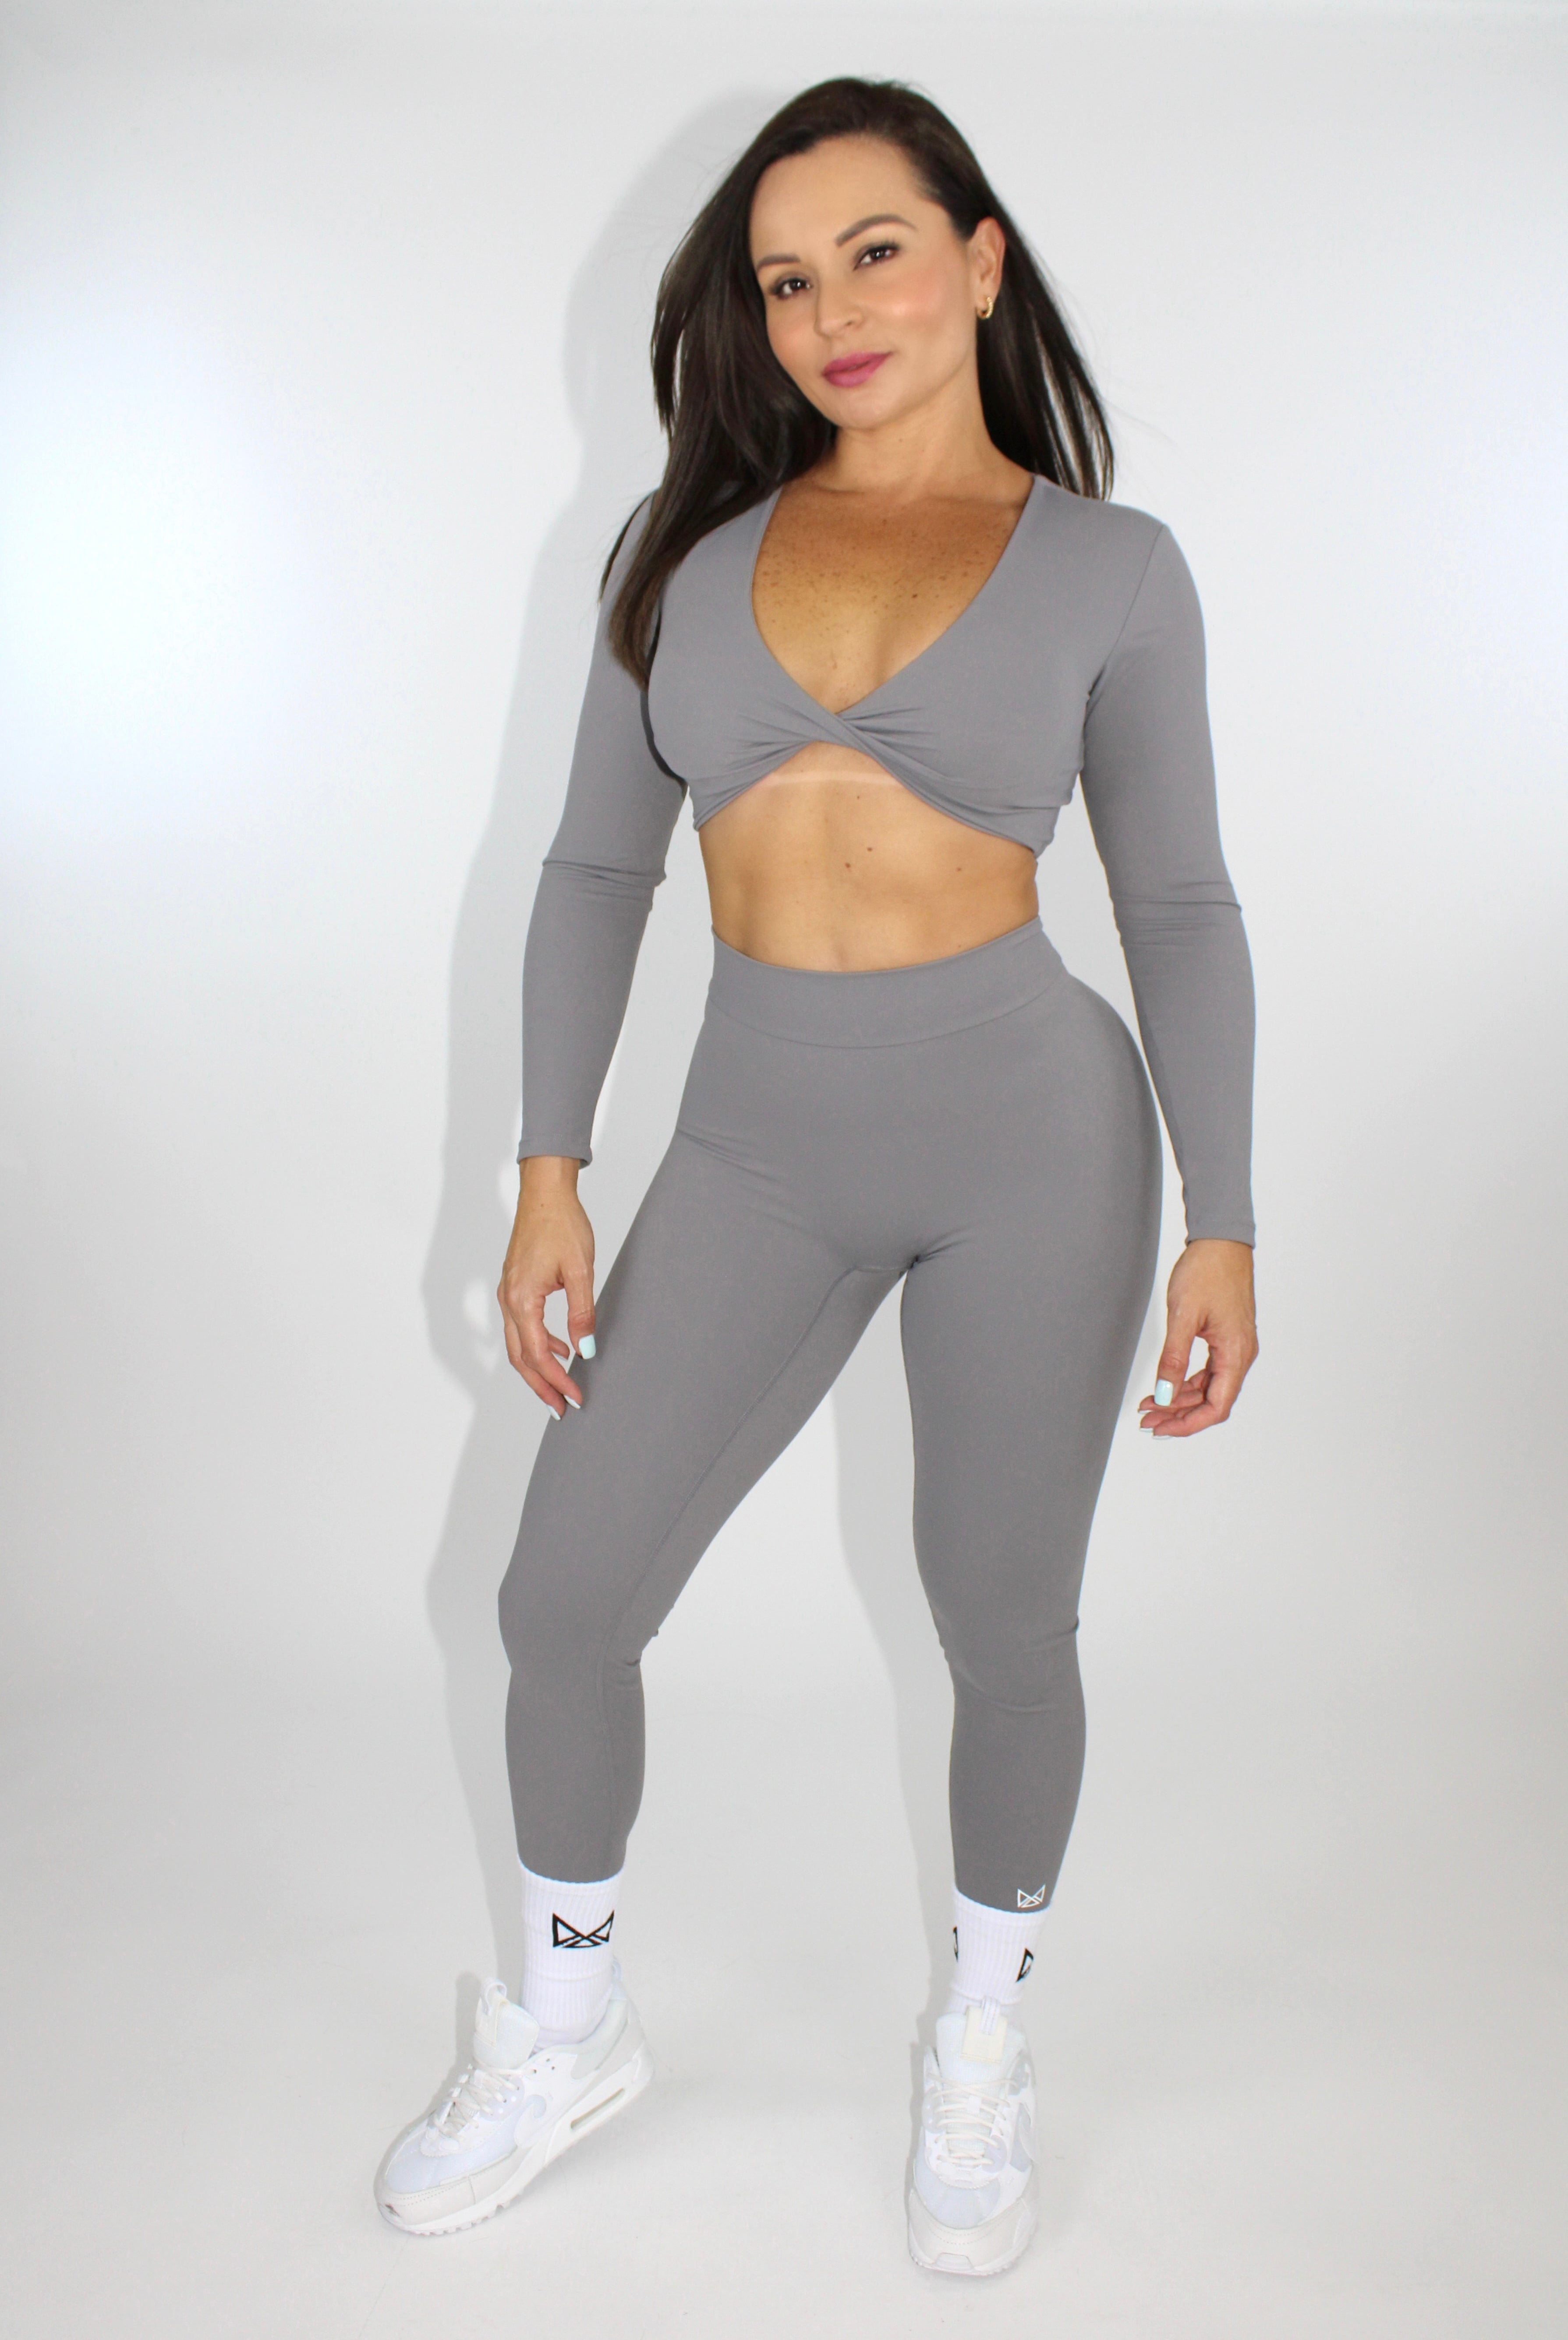 MILA MVMT Sportswear Long Sleeve Crop Top Gymwear Athleisure Sports Bra in Gray - model facing front